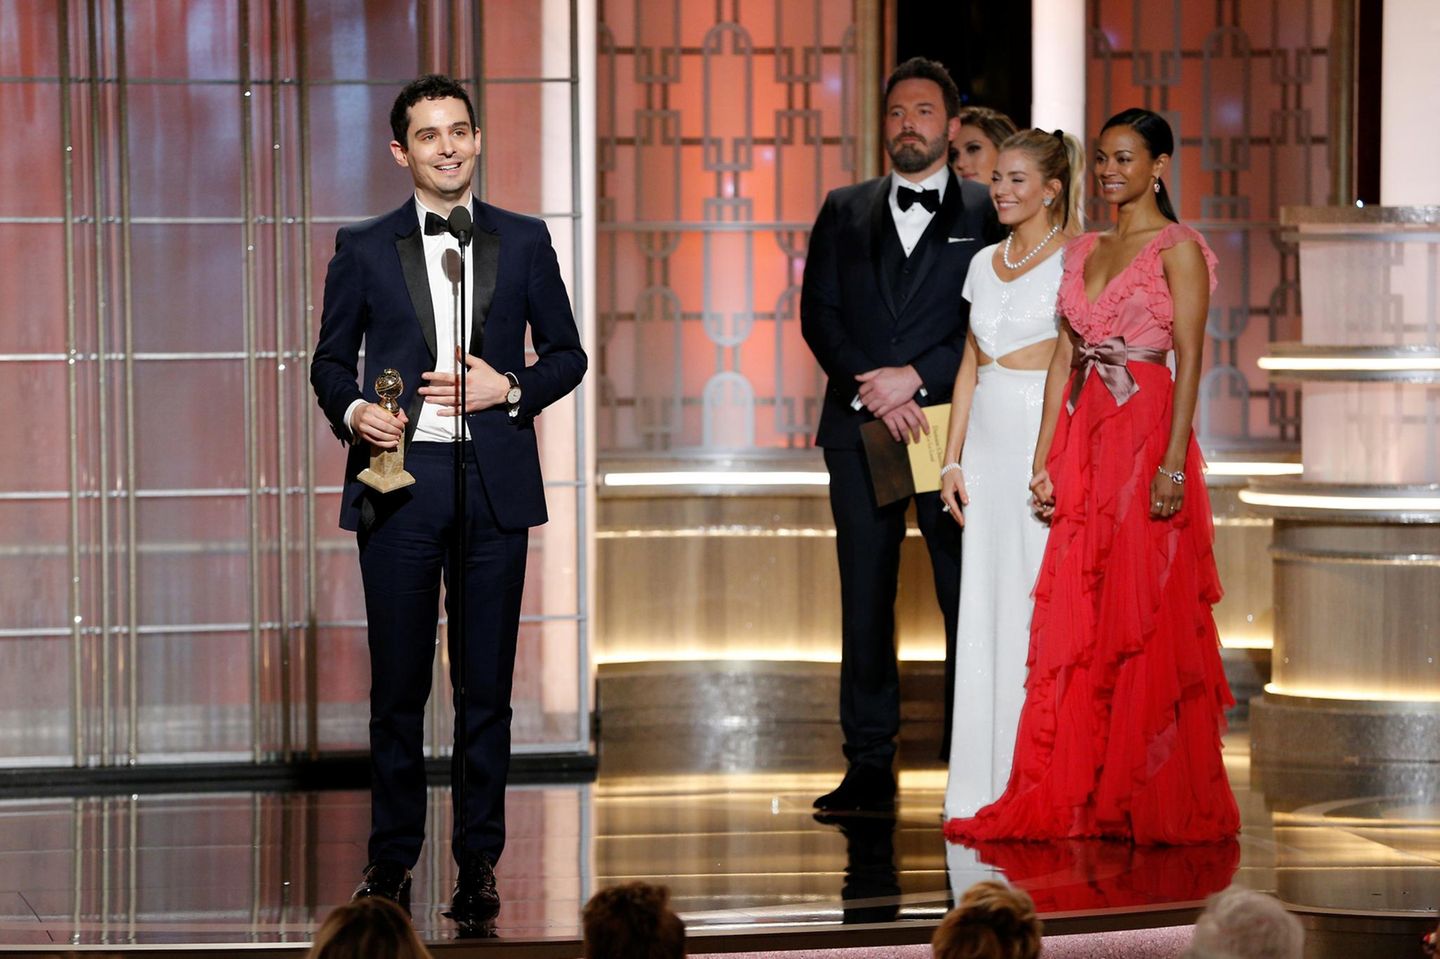 Ben Affleck, Sienna Miller und Zoe Saldana lauschen gespannt der Dankesrede von "La La Land"-Regisseur Damien Chazelle.